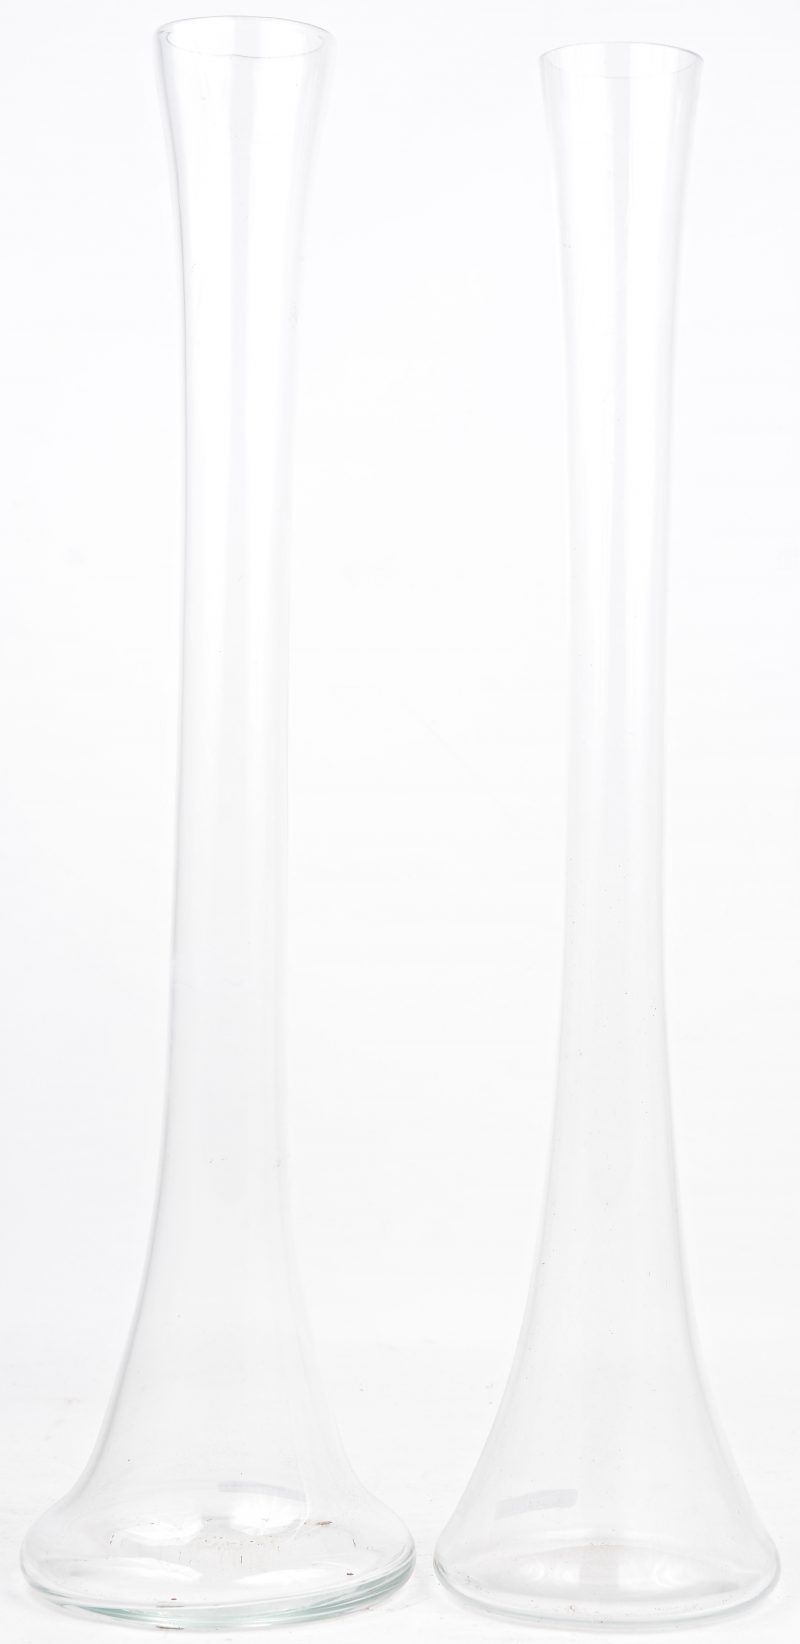 Twee langgerekte glazen vazen.